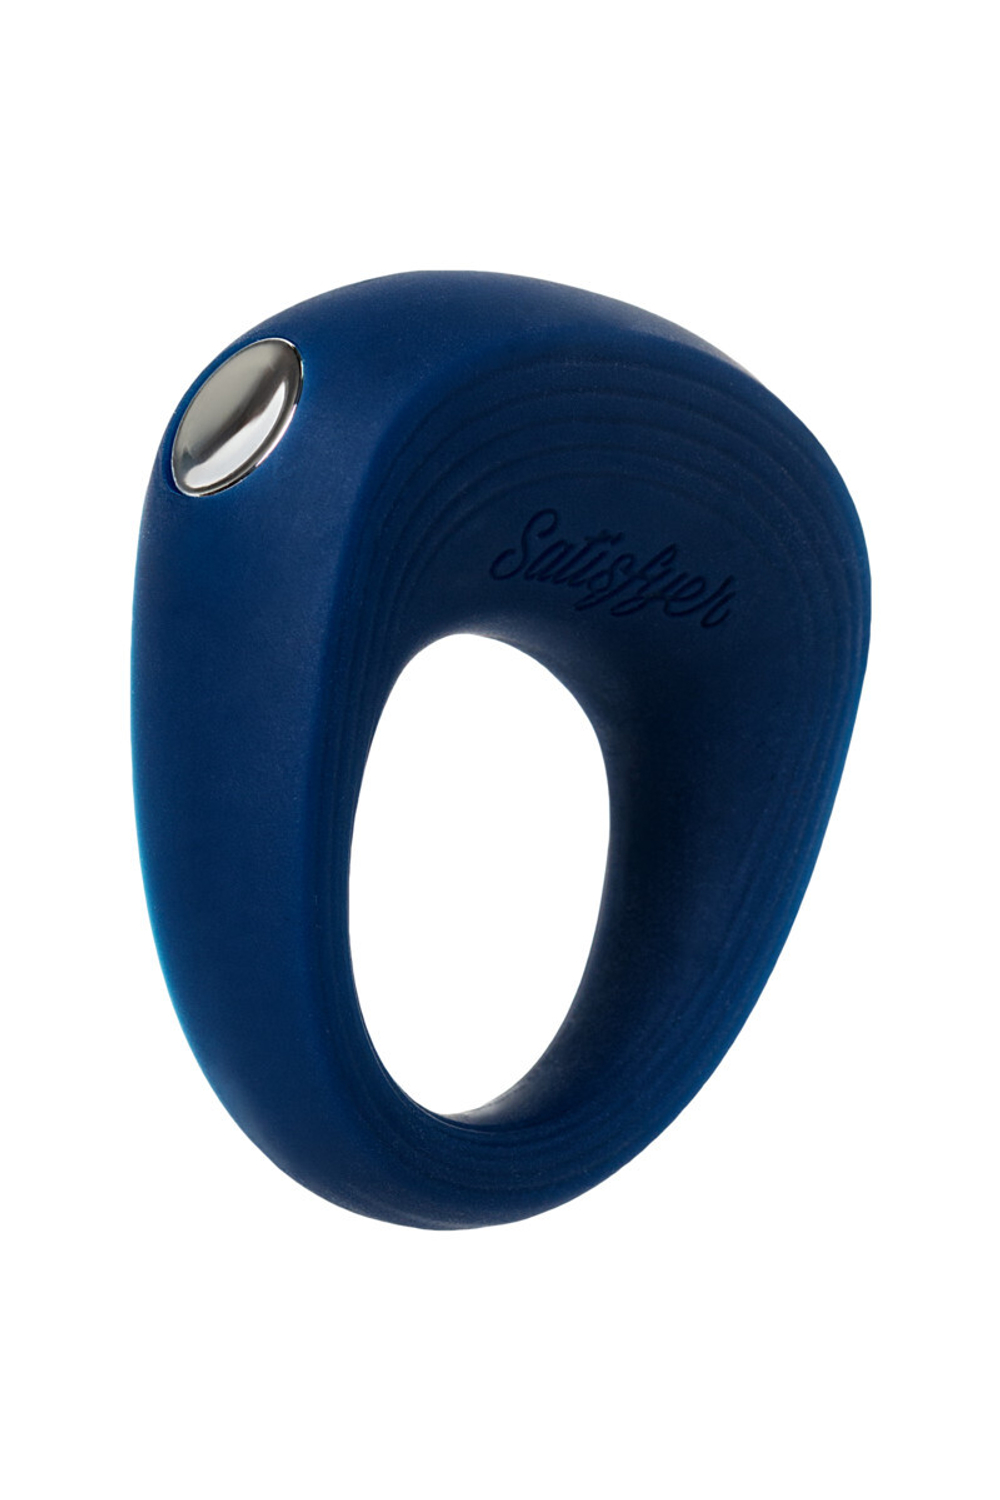 Эрекционное кольцо на пенис Satisfyer Rings, 5,5 см.